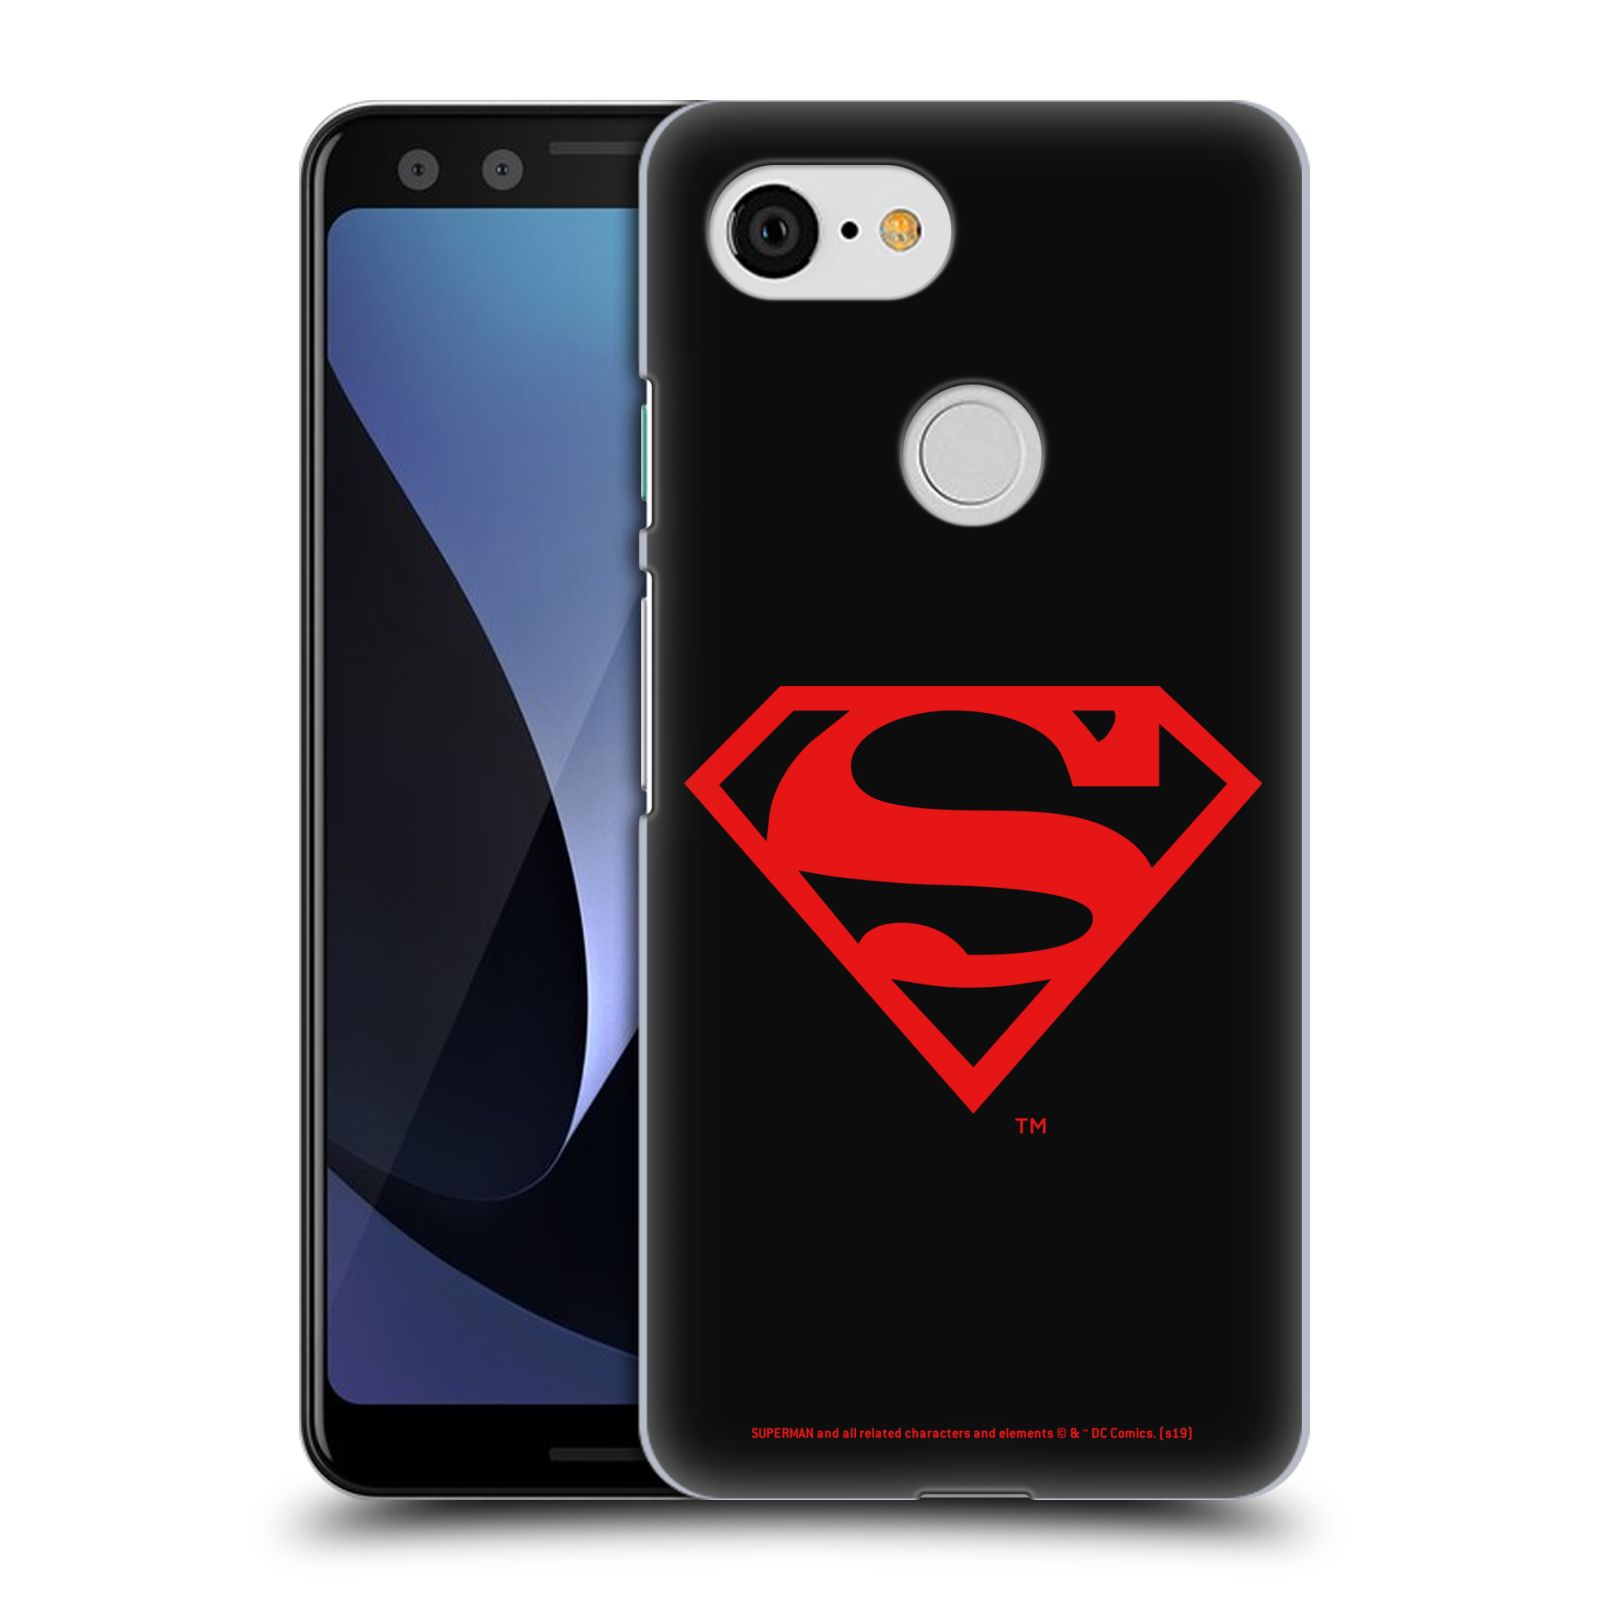 Pouzdro na mobil Google Pixel 3 - HEAD CASE - DC komix Superman červený znak černé pozadí